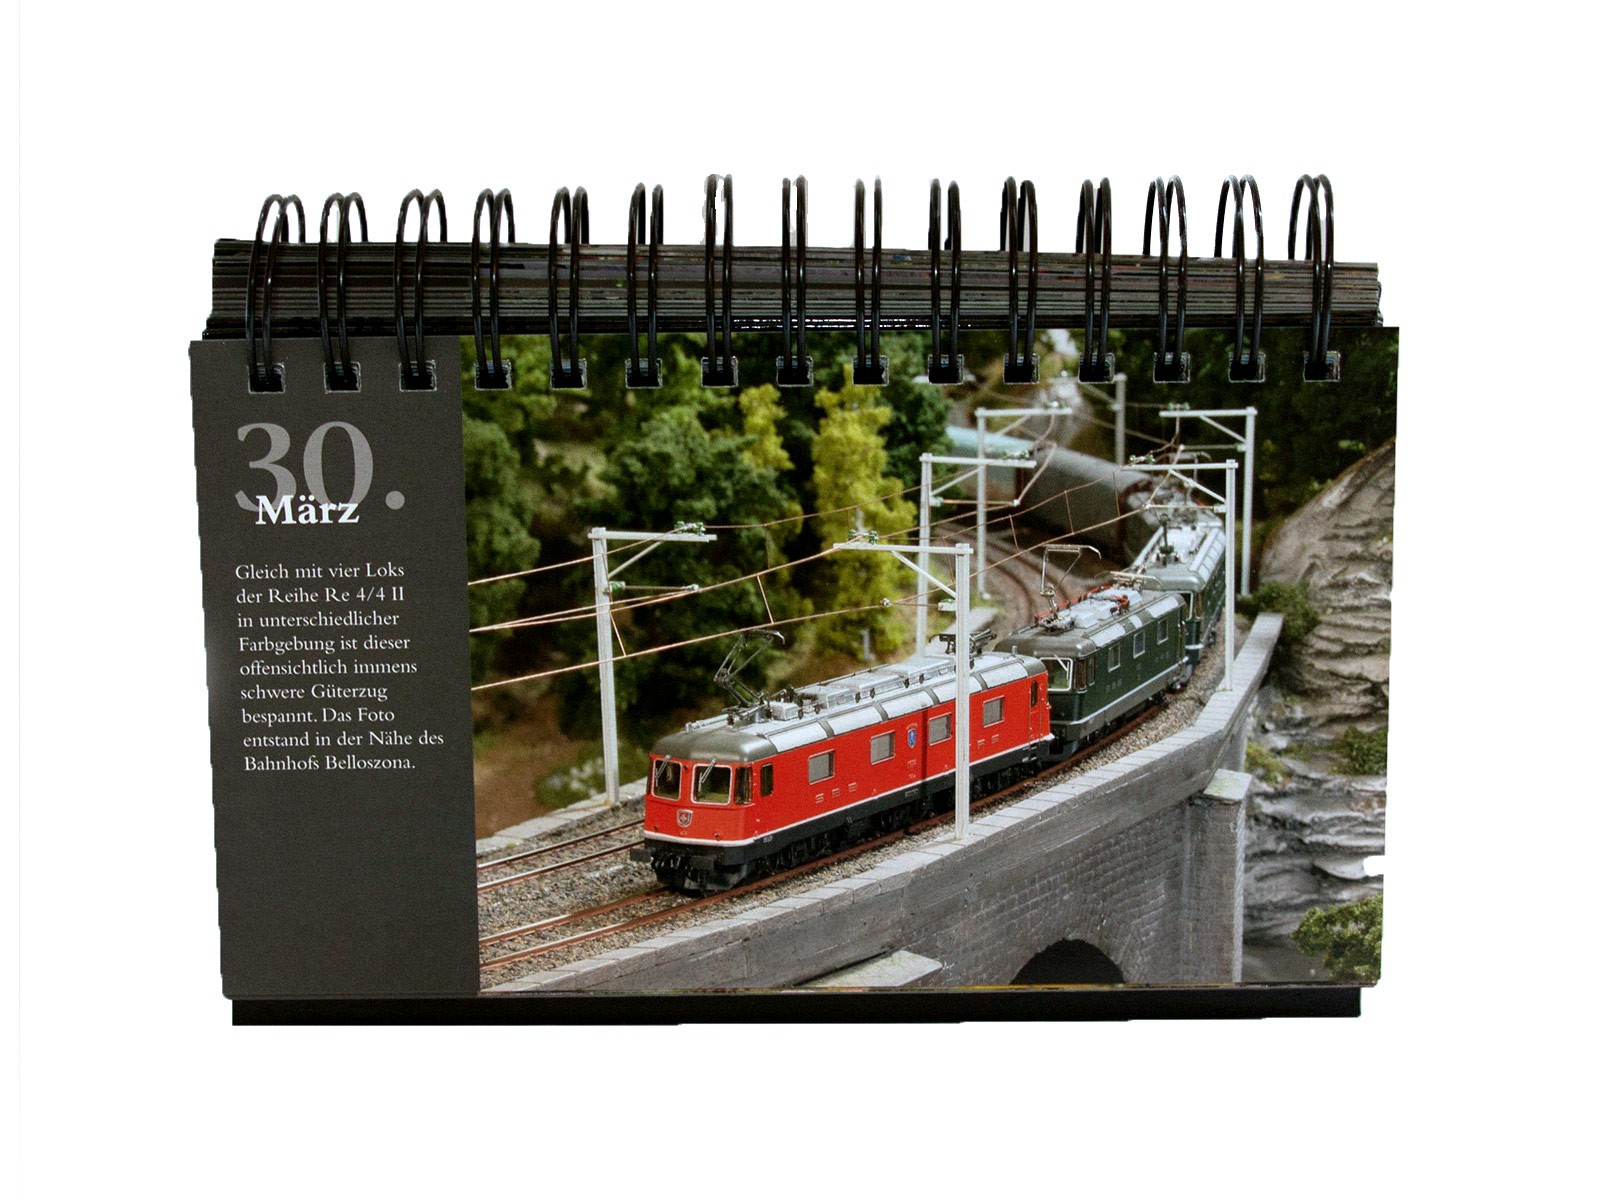 Miniatur Wunderland - immerwährender Kalender - mit 366 Bildern